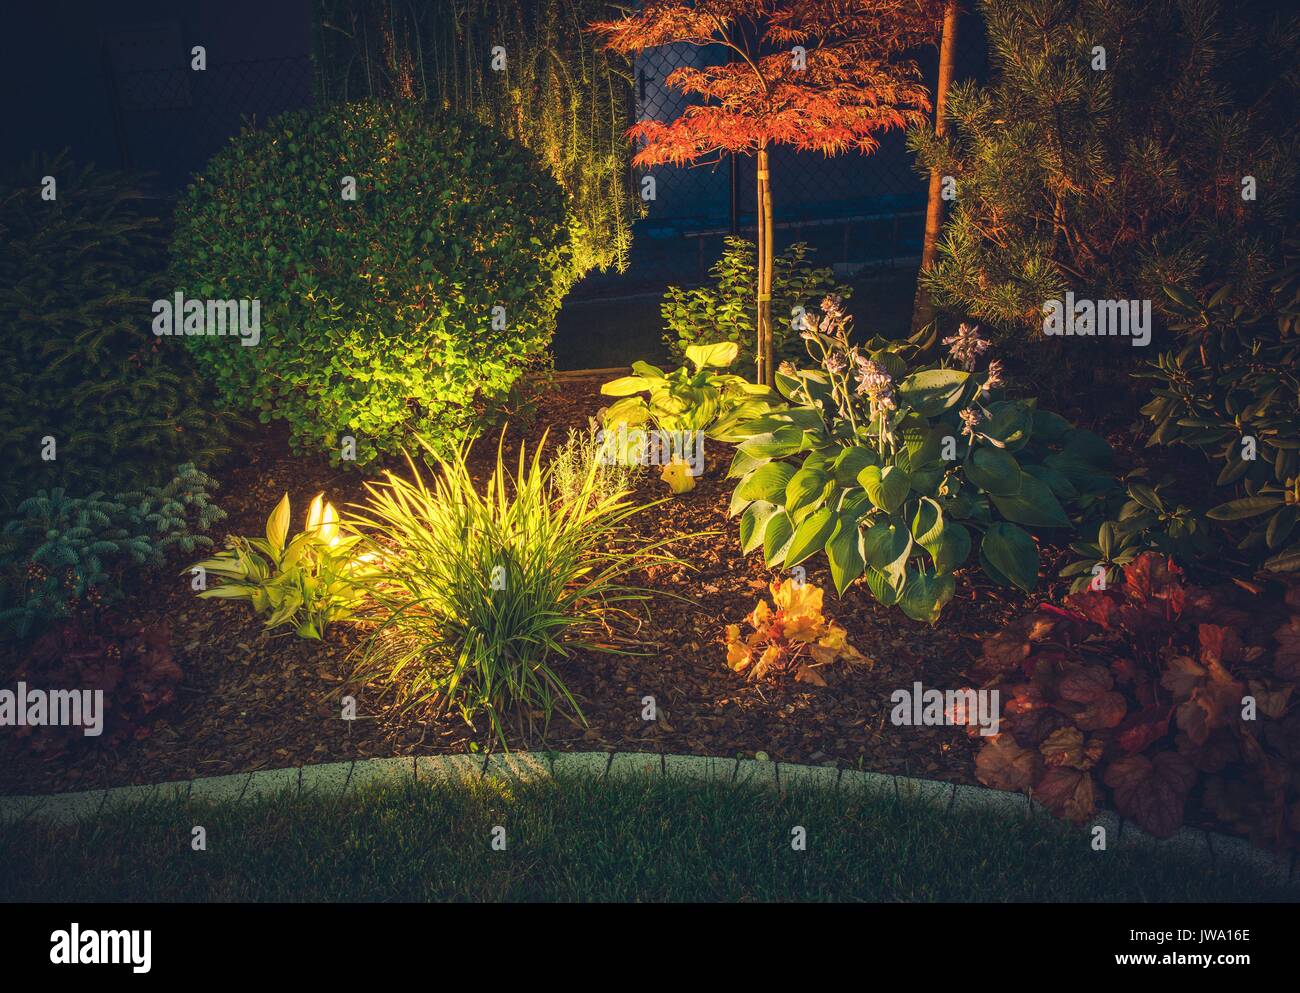 Jardin de l'éclairage ambiant. Système d'éclairage de jardin. Plantes colorées dans la nuit. Banque D'Images